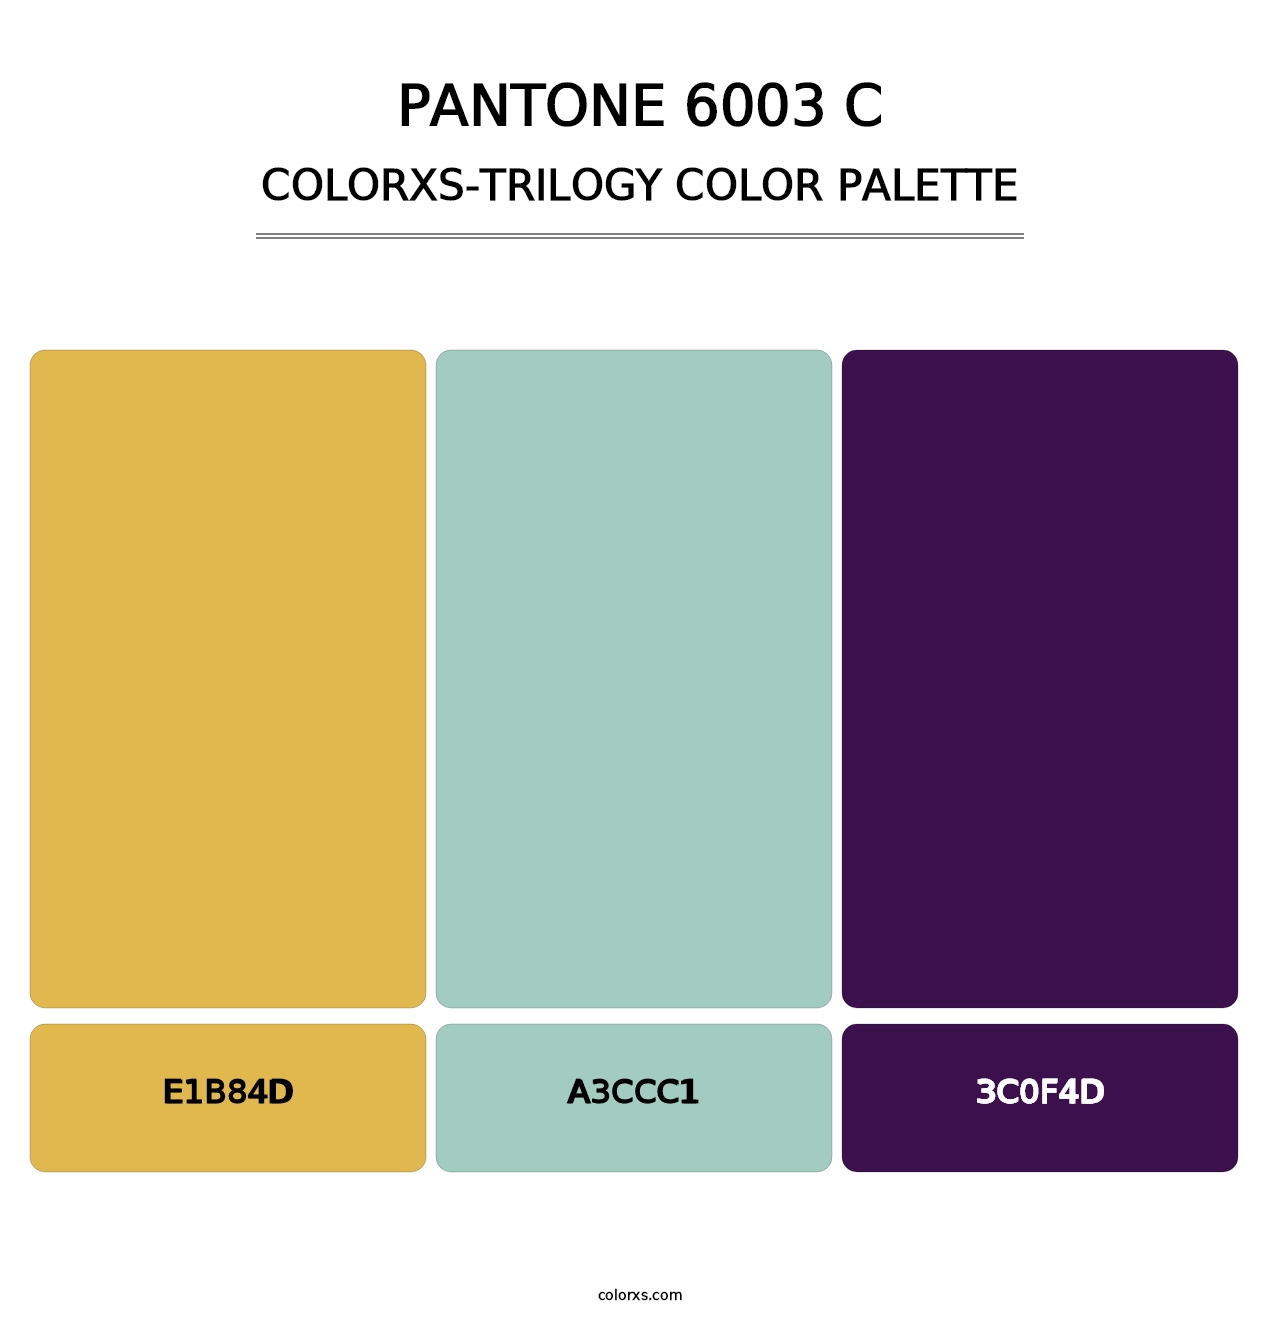 PANTONE 6003 C - Colorxs Trilogy Palette